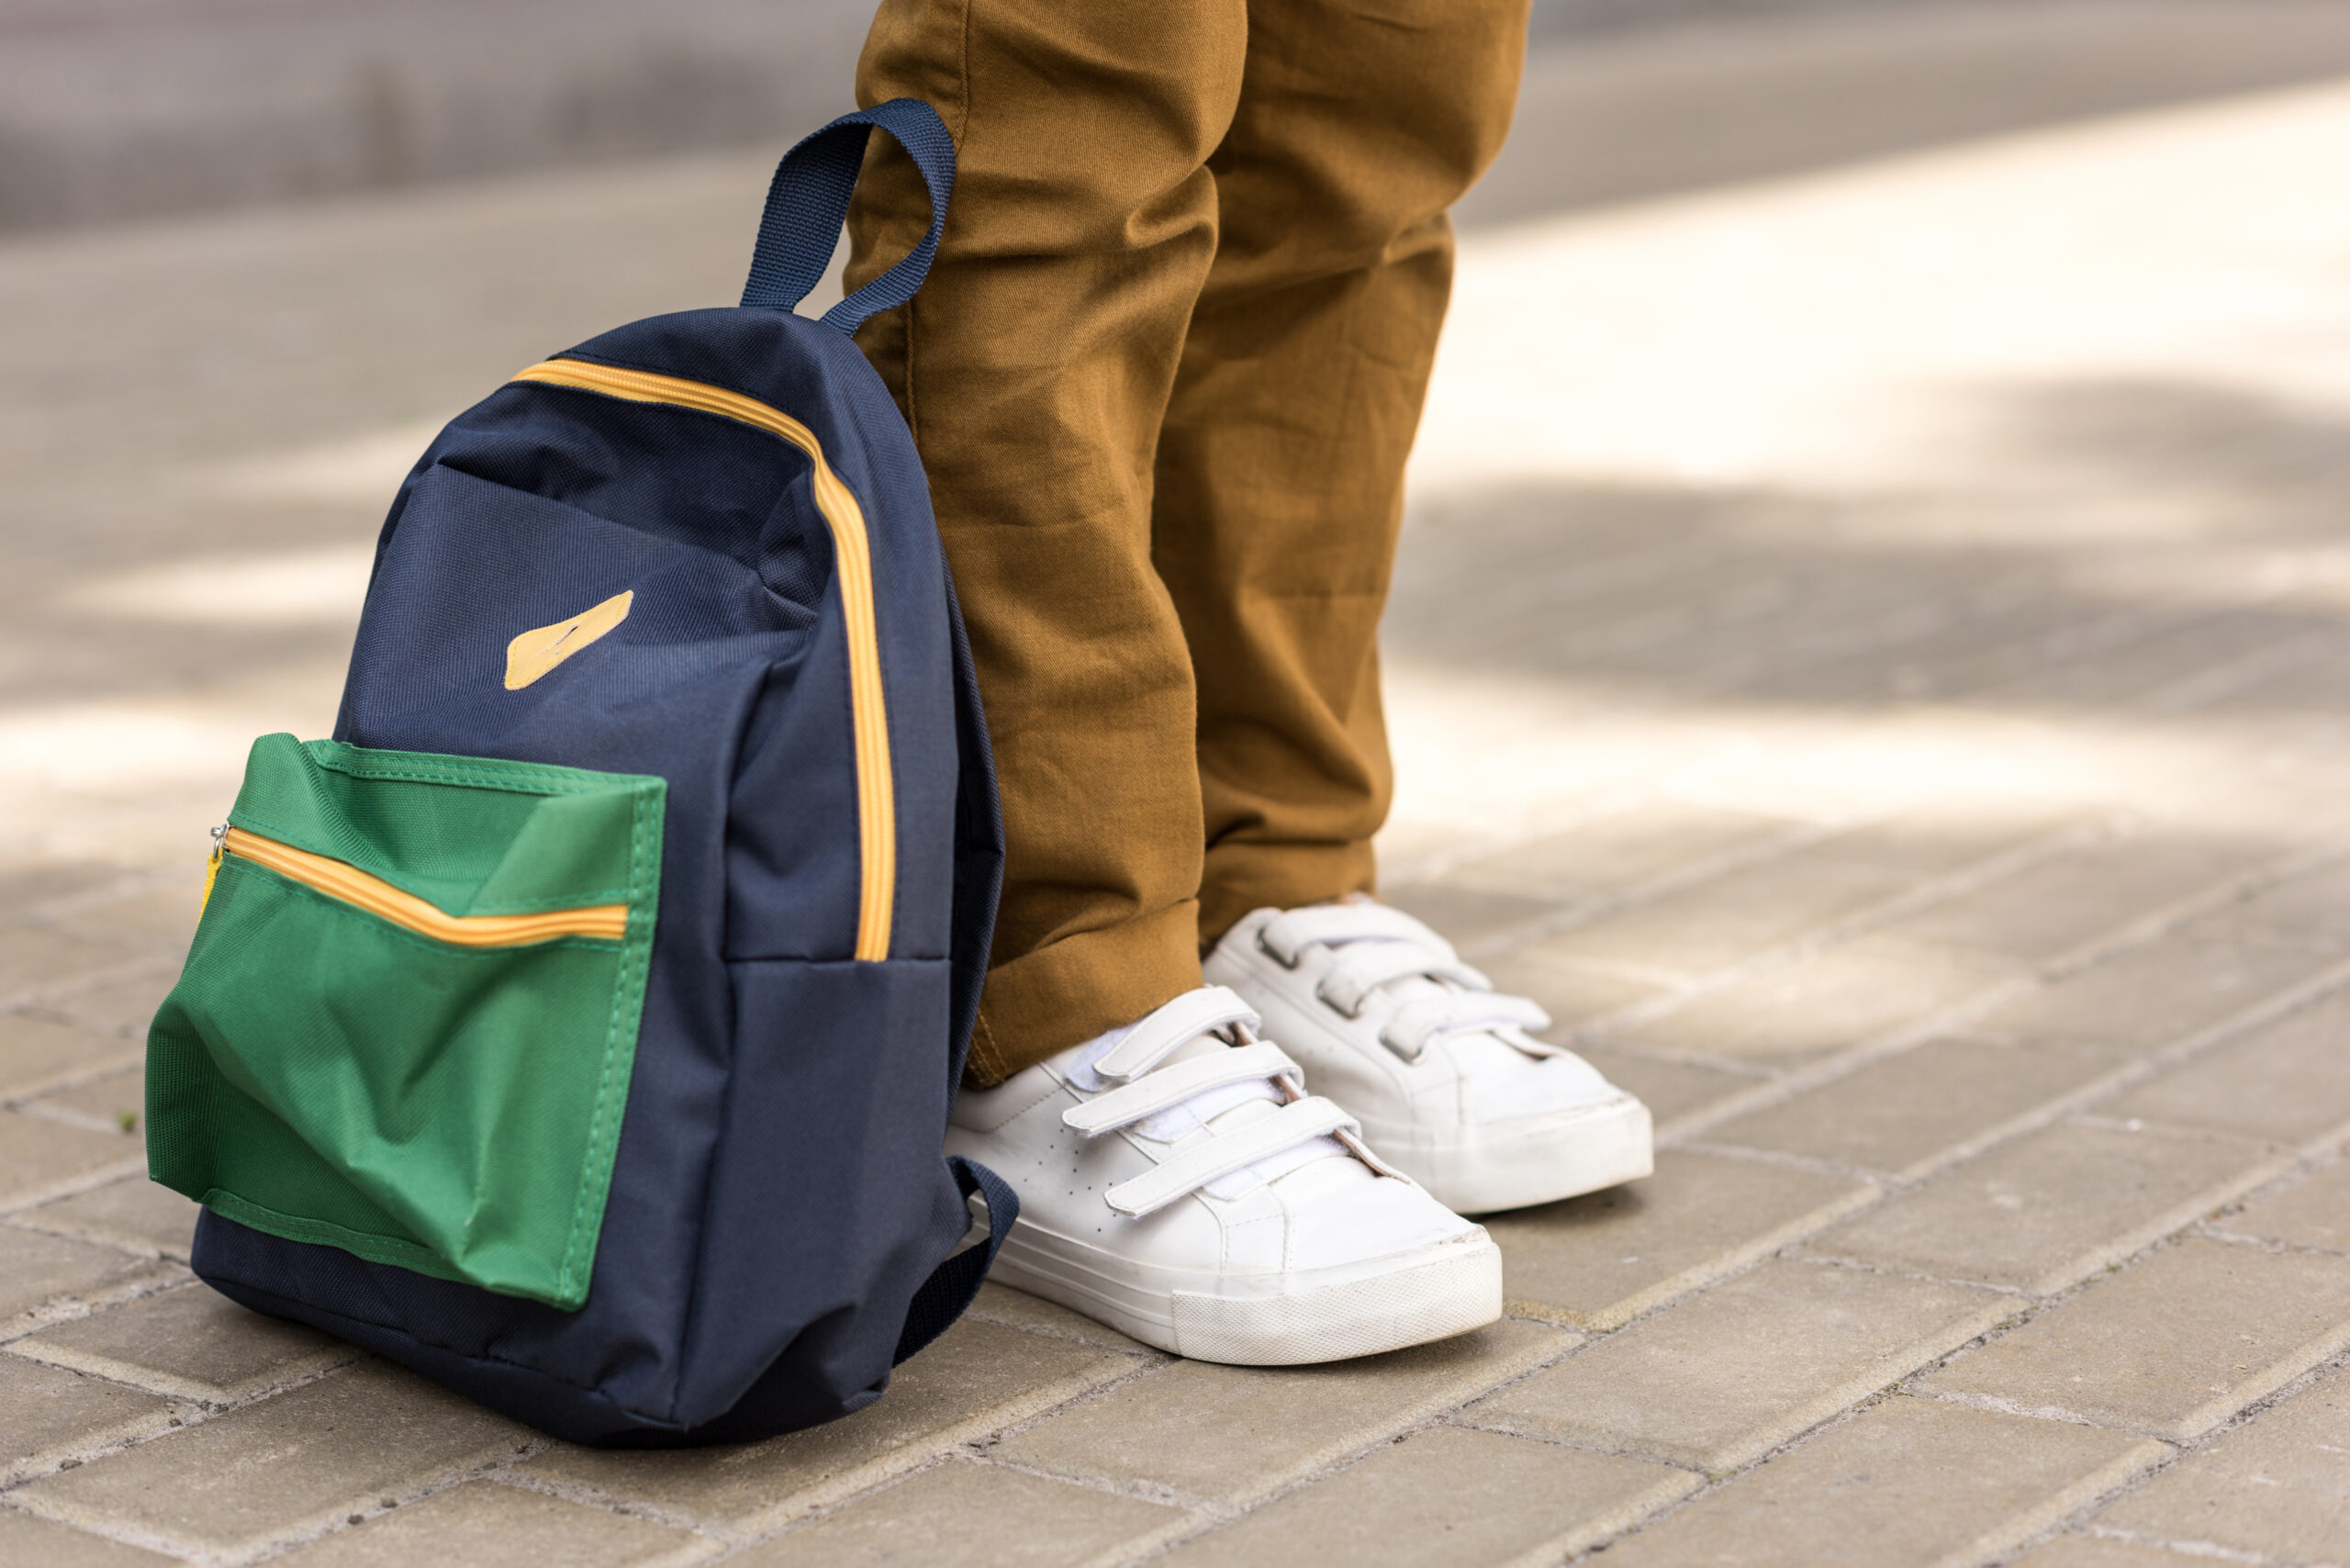 Närbild av en skolelevs skor som har sin ryggsäck stående bredvid sig på marken.